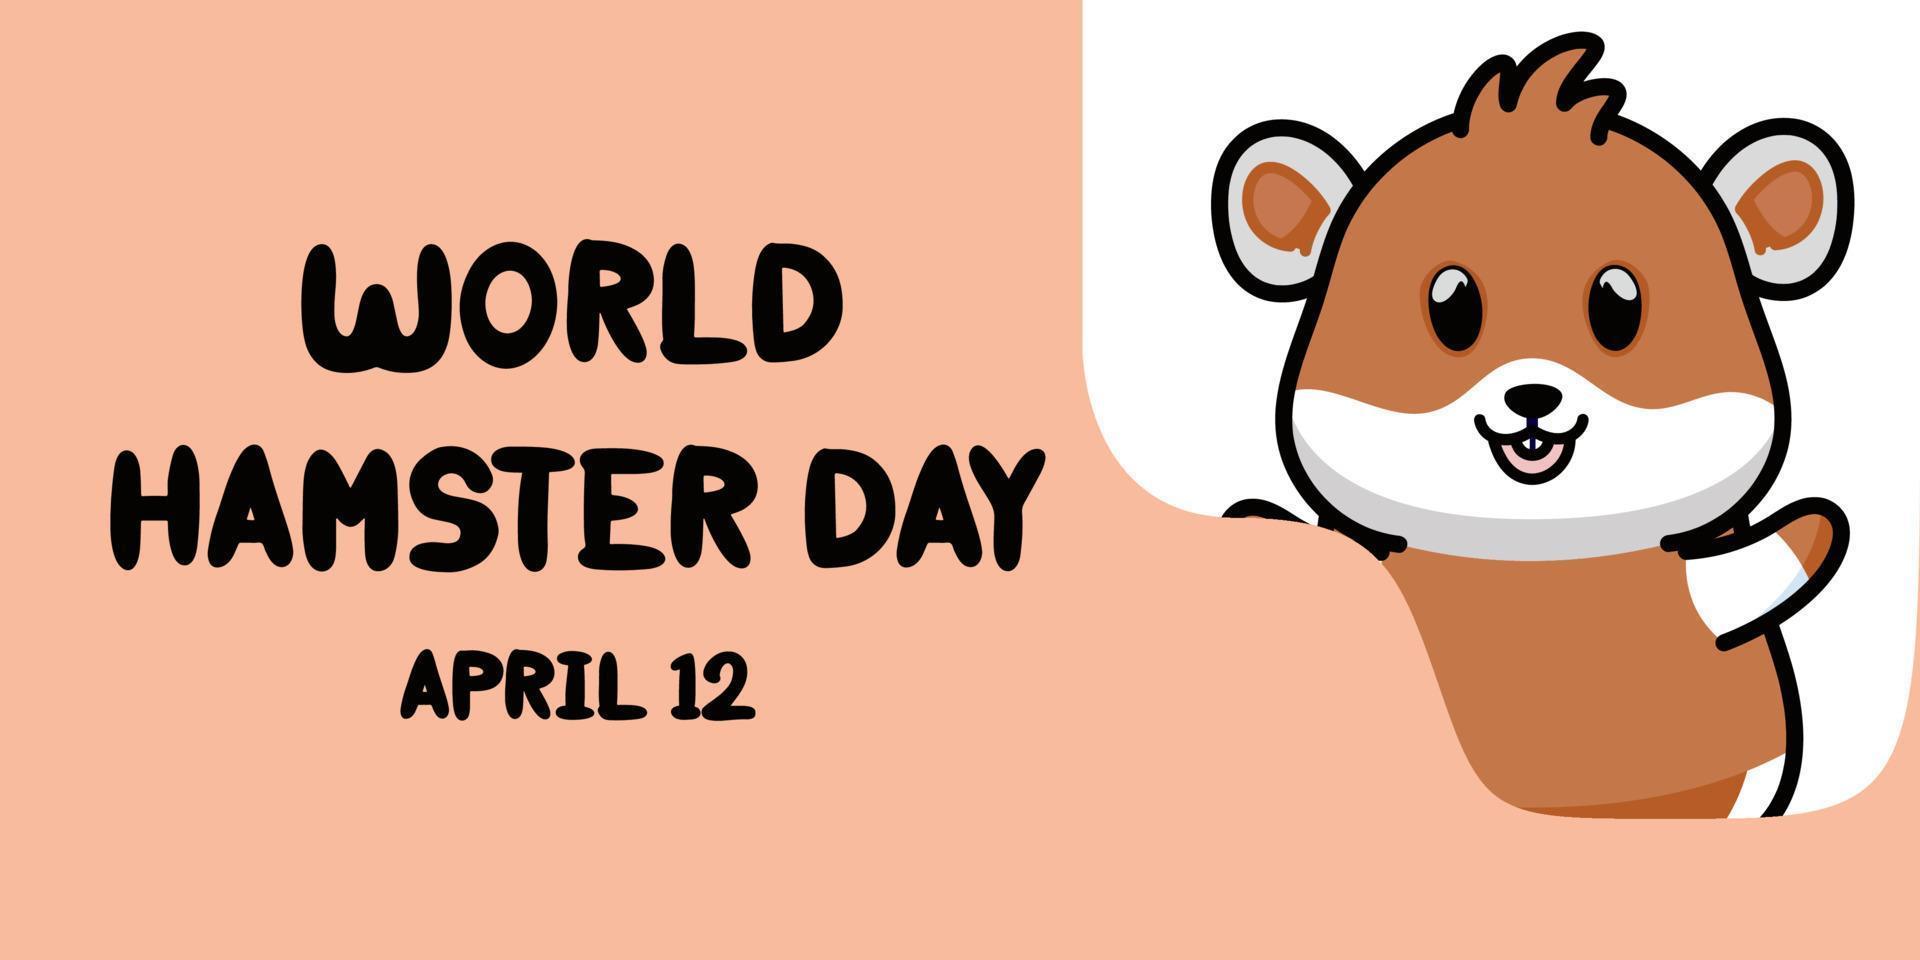 World hamster day April 12 celebration. flat design. flyer design. flat